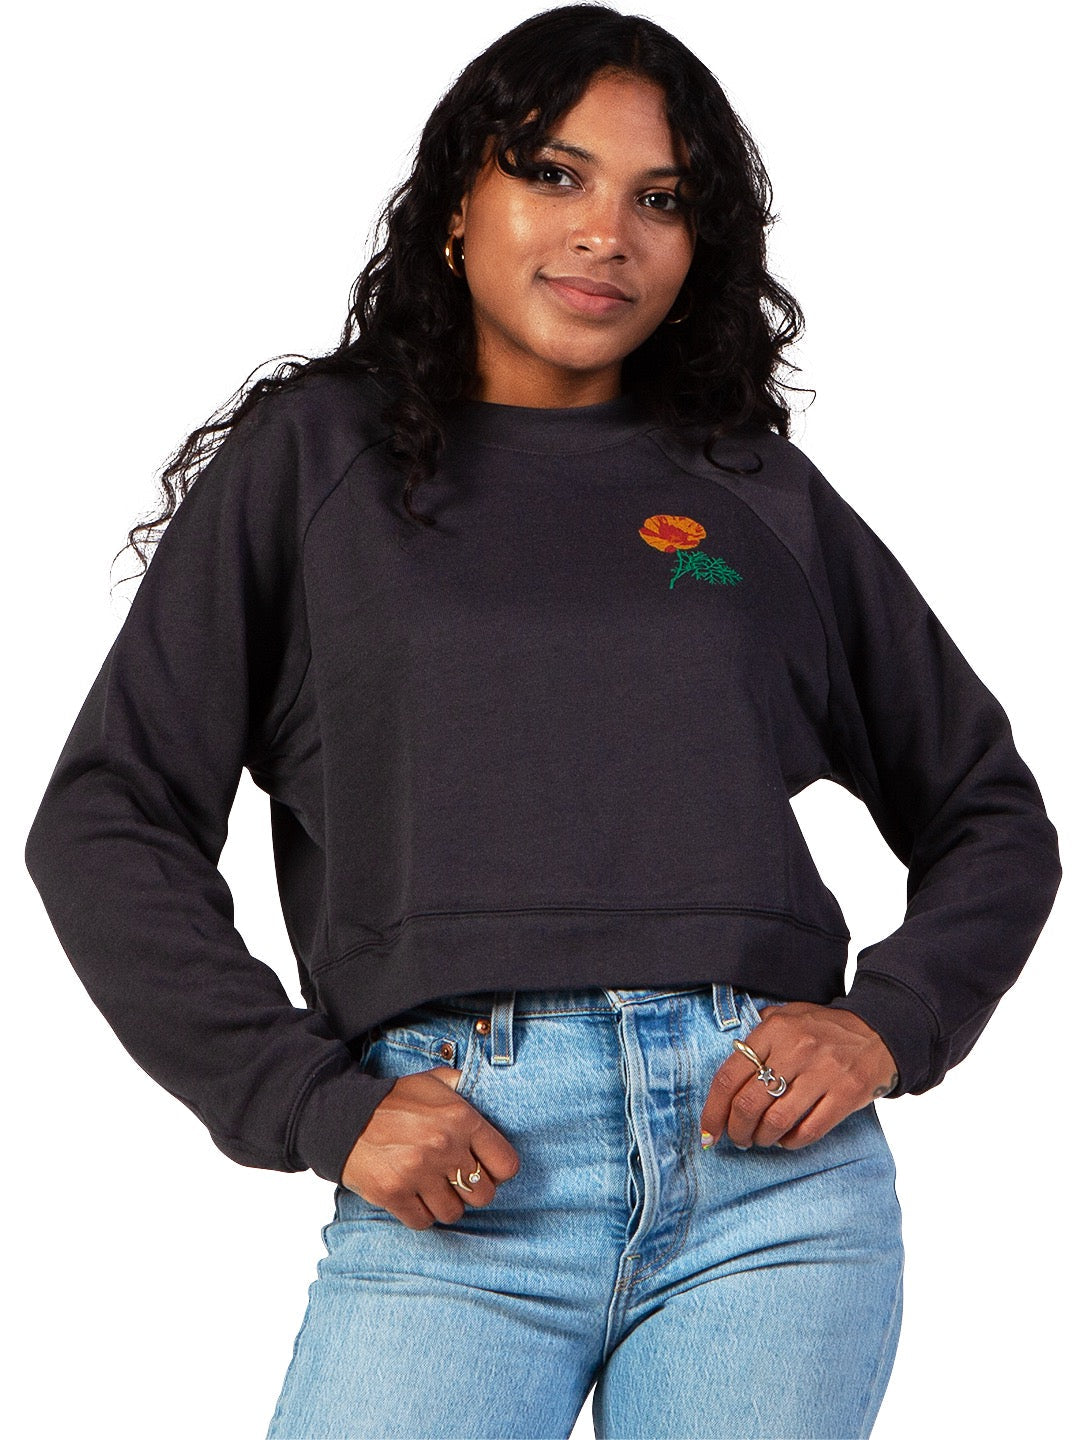 Jen Kindell Poppy Women's Cropped Crewneck Sweatshirt Faded Black-Culk